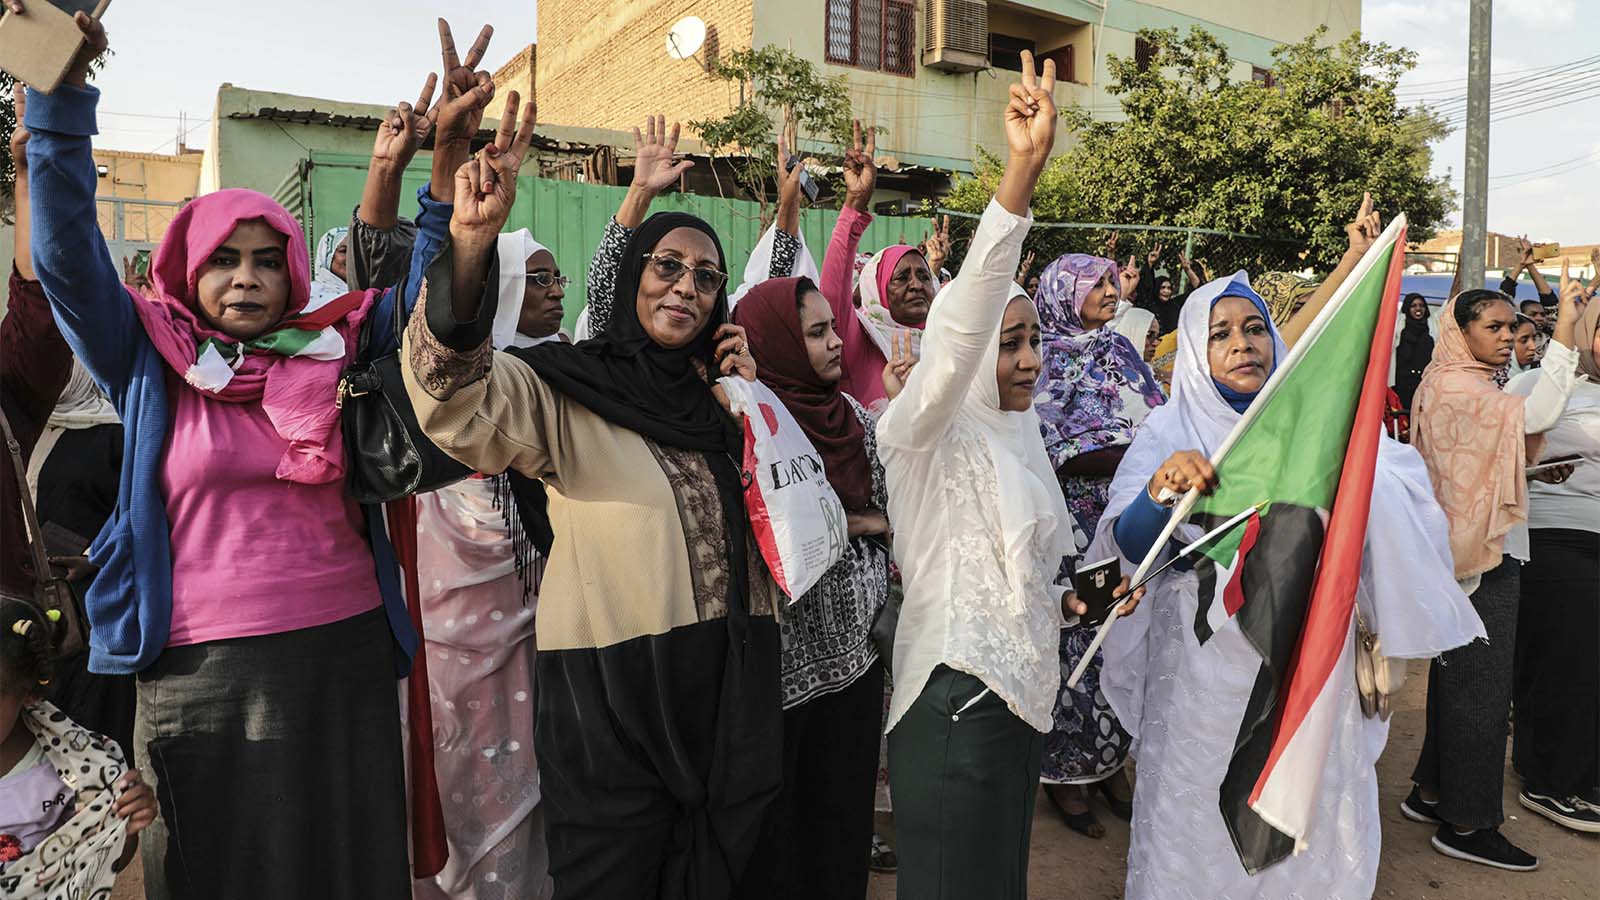 مواطنات سودانيات يحتفلن في شوارع العاصمة الخرطوم بالاتفاقية التي أنجزت بين قادة المعارضة والاتحادات المهنية وبين الحكومة الانتقالية المؤقتة، 5 تموز/ يوليو 2019. (تصوير: AP)